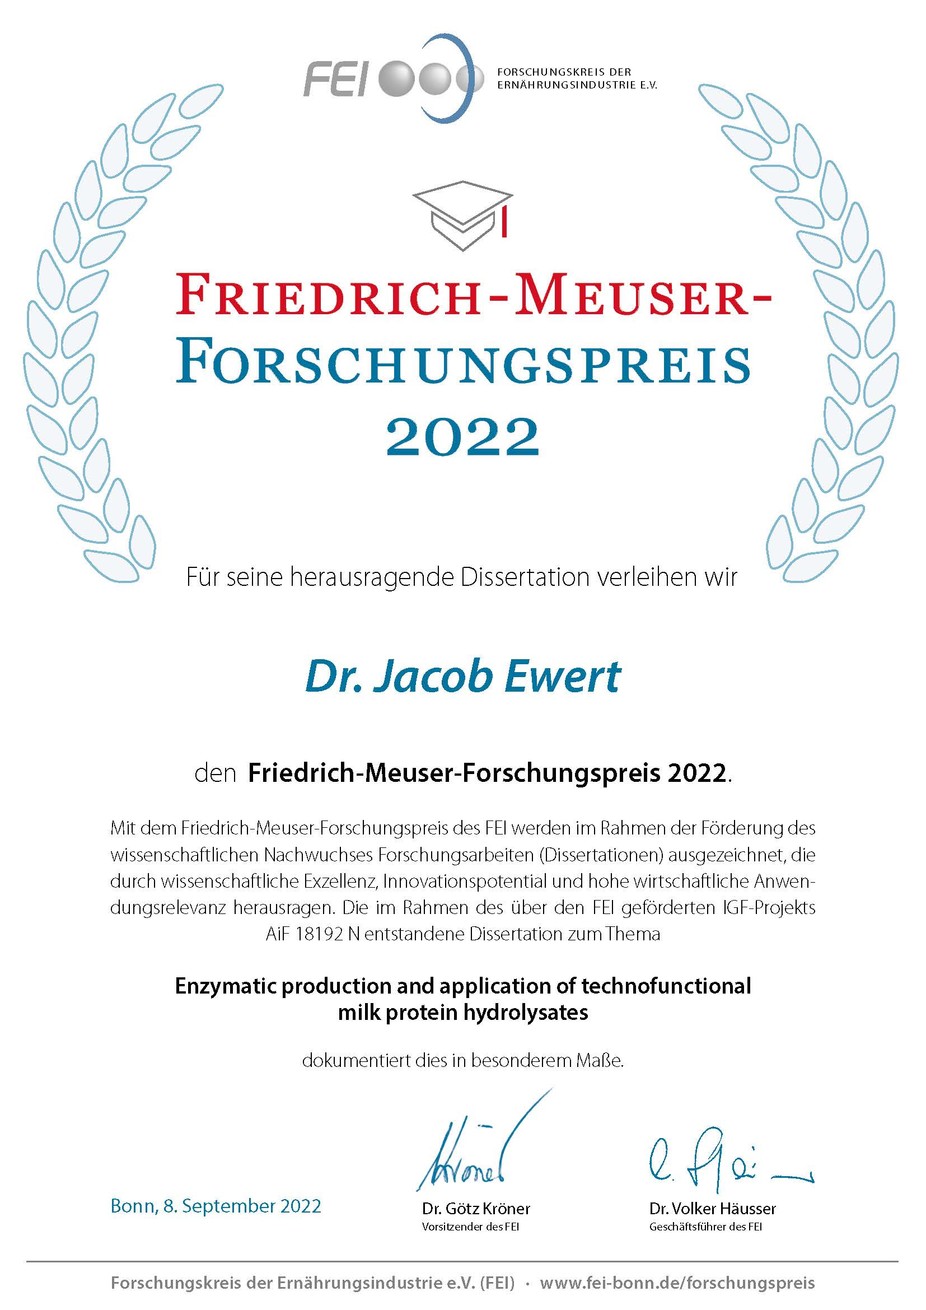 Urkunde Friedrich-Meuser-Forschungspreis 2022 von Dr. Jacob Ewert